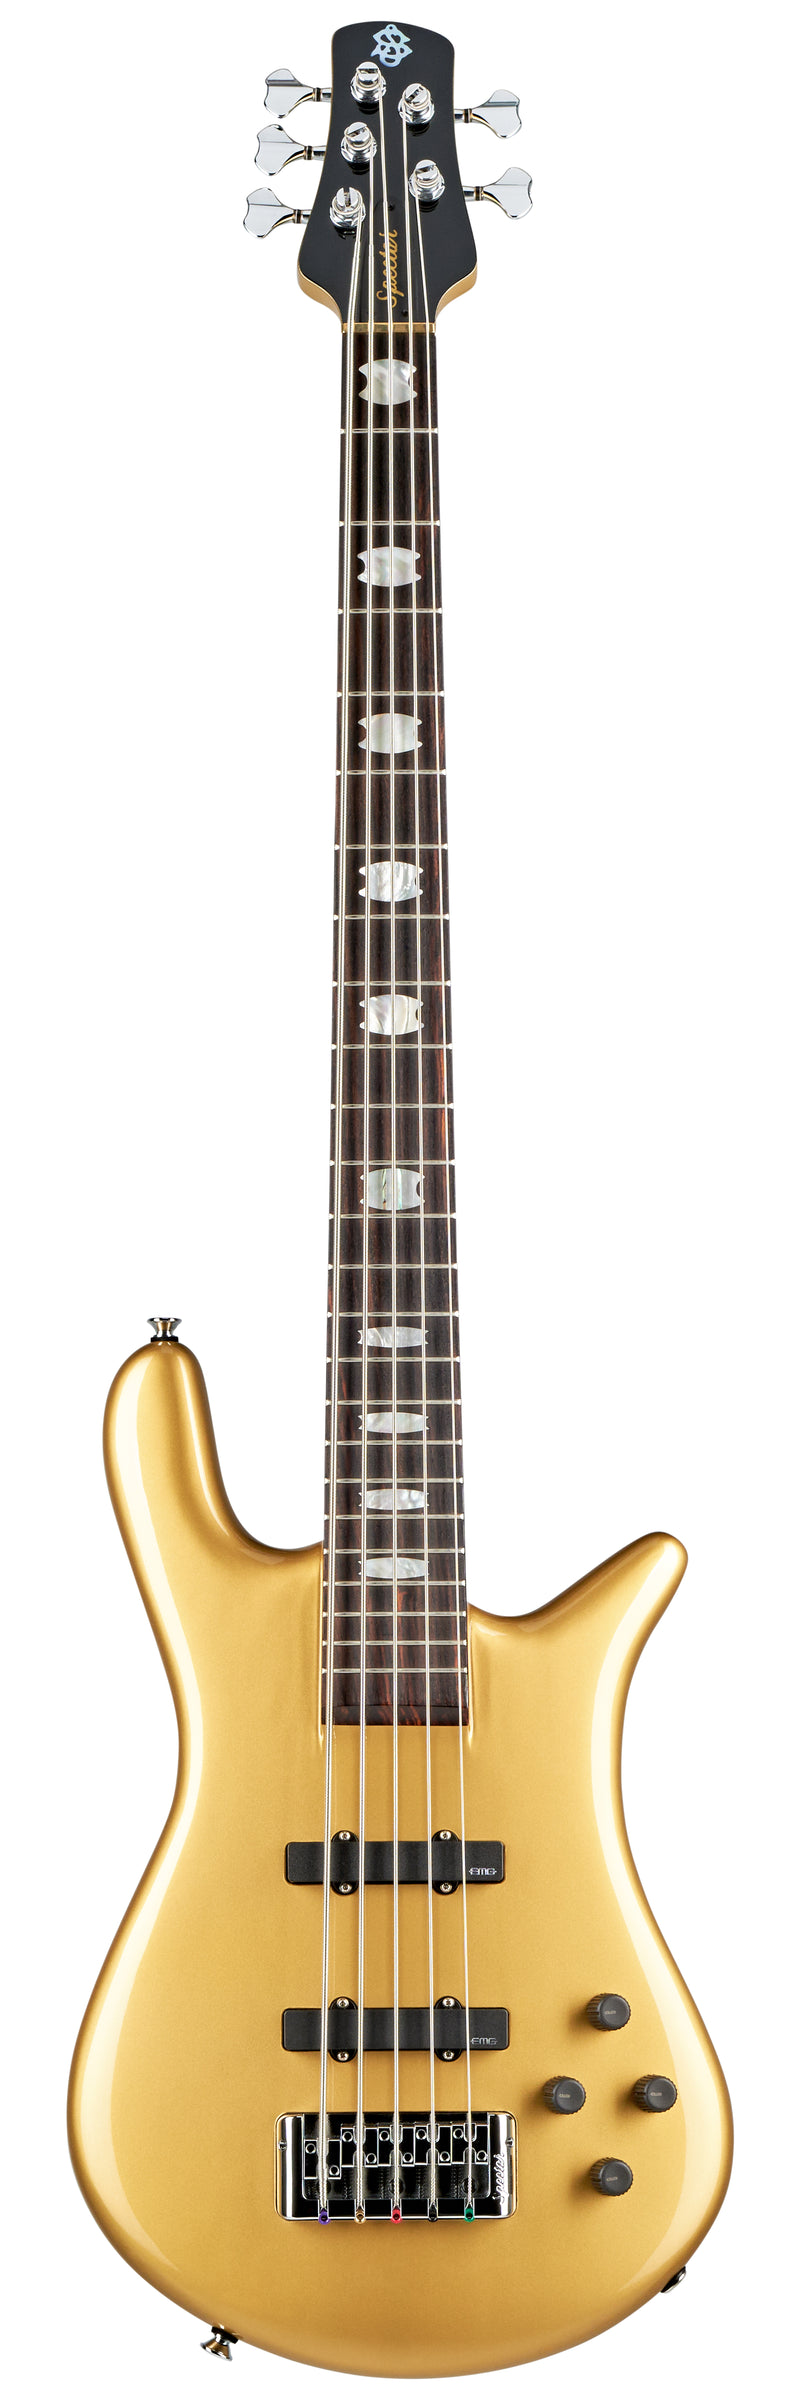 Spector EURO 5 CLASSIC 5-String Bass Guitar (Metallic Gold Gloss)